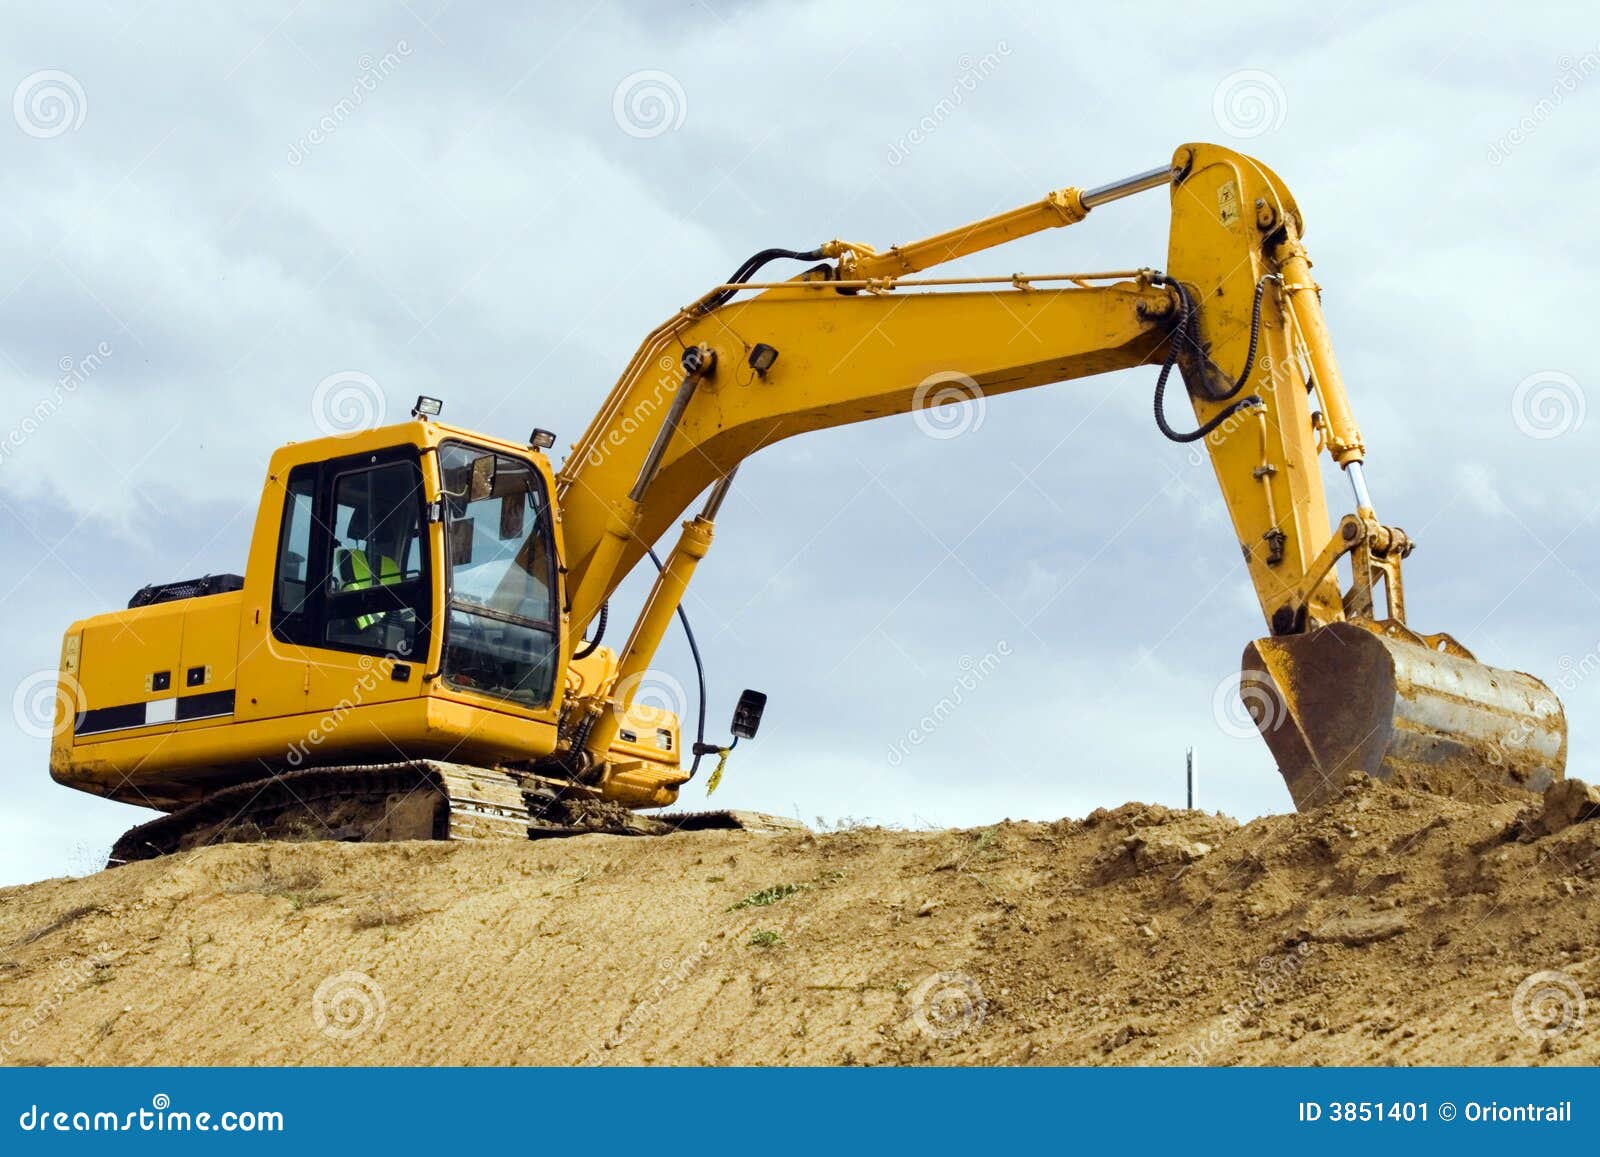 yellow excavator machine